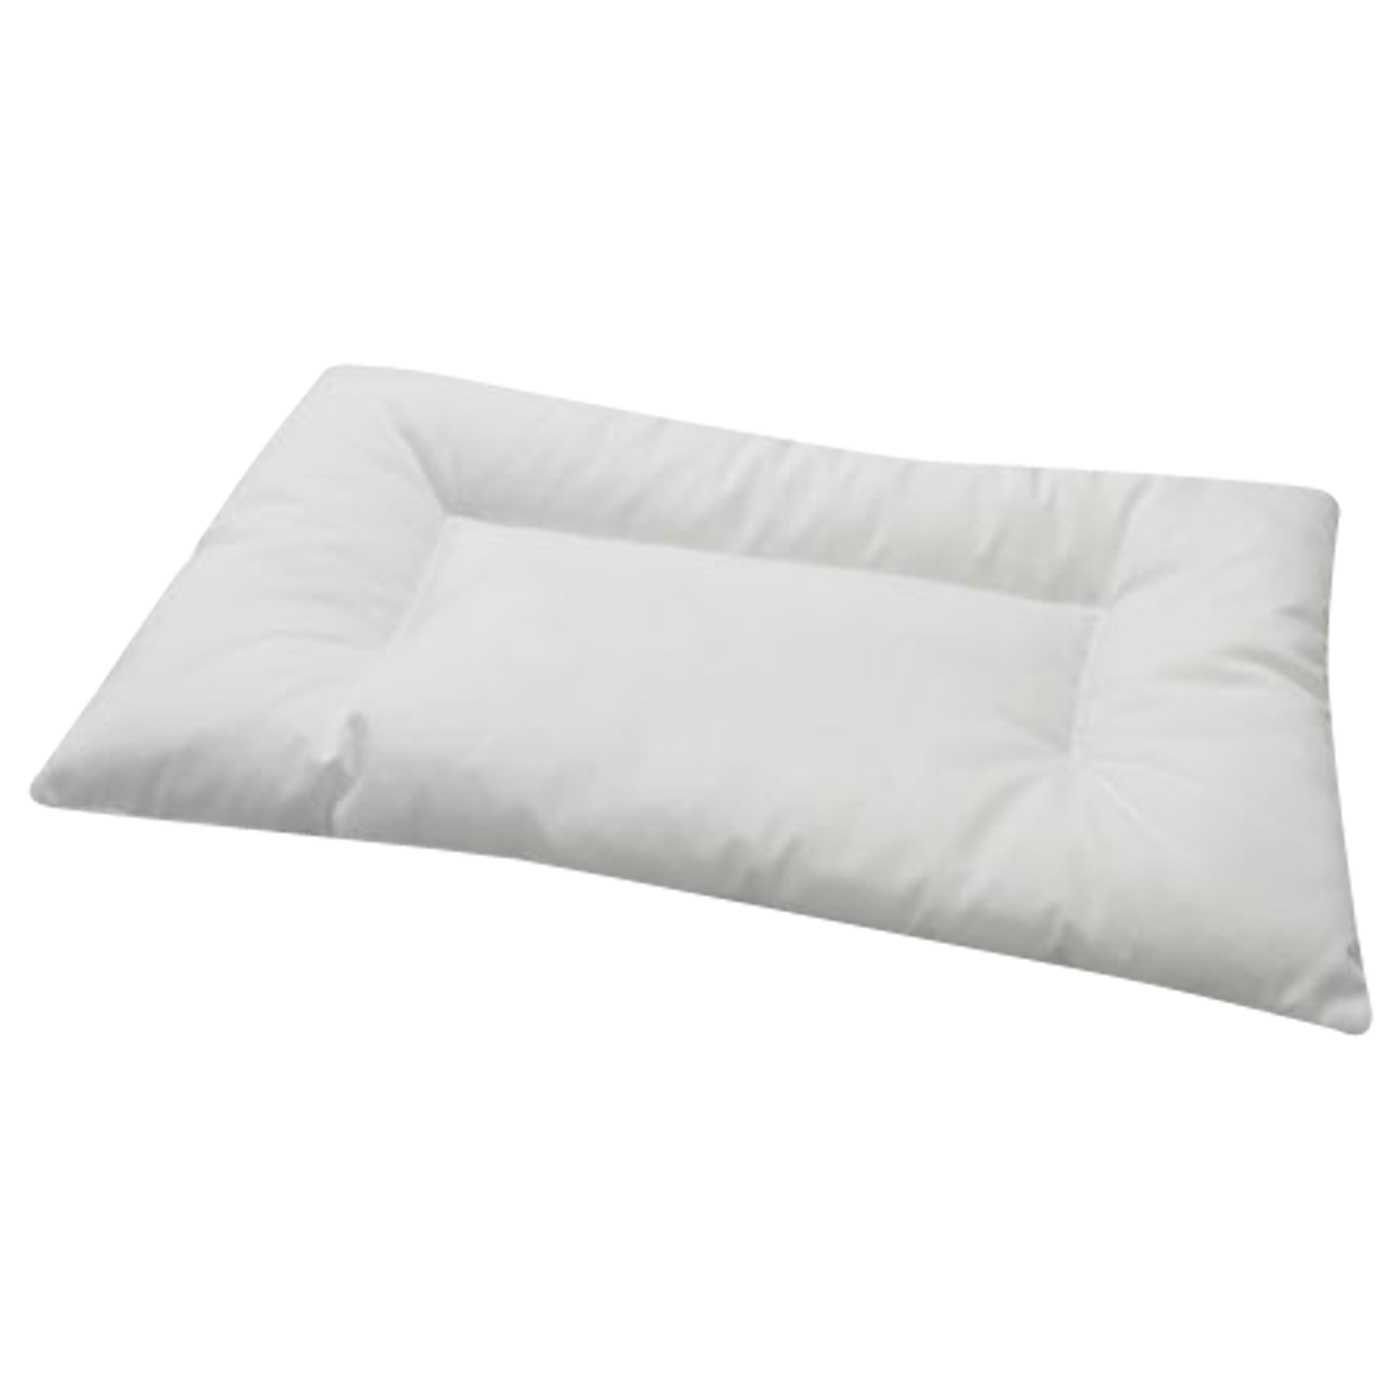 IKEA Len Pillow